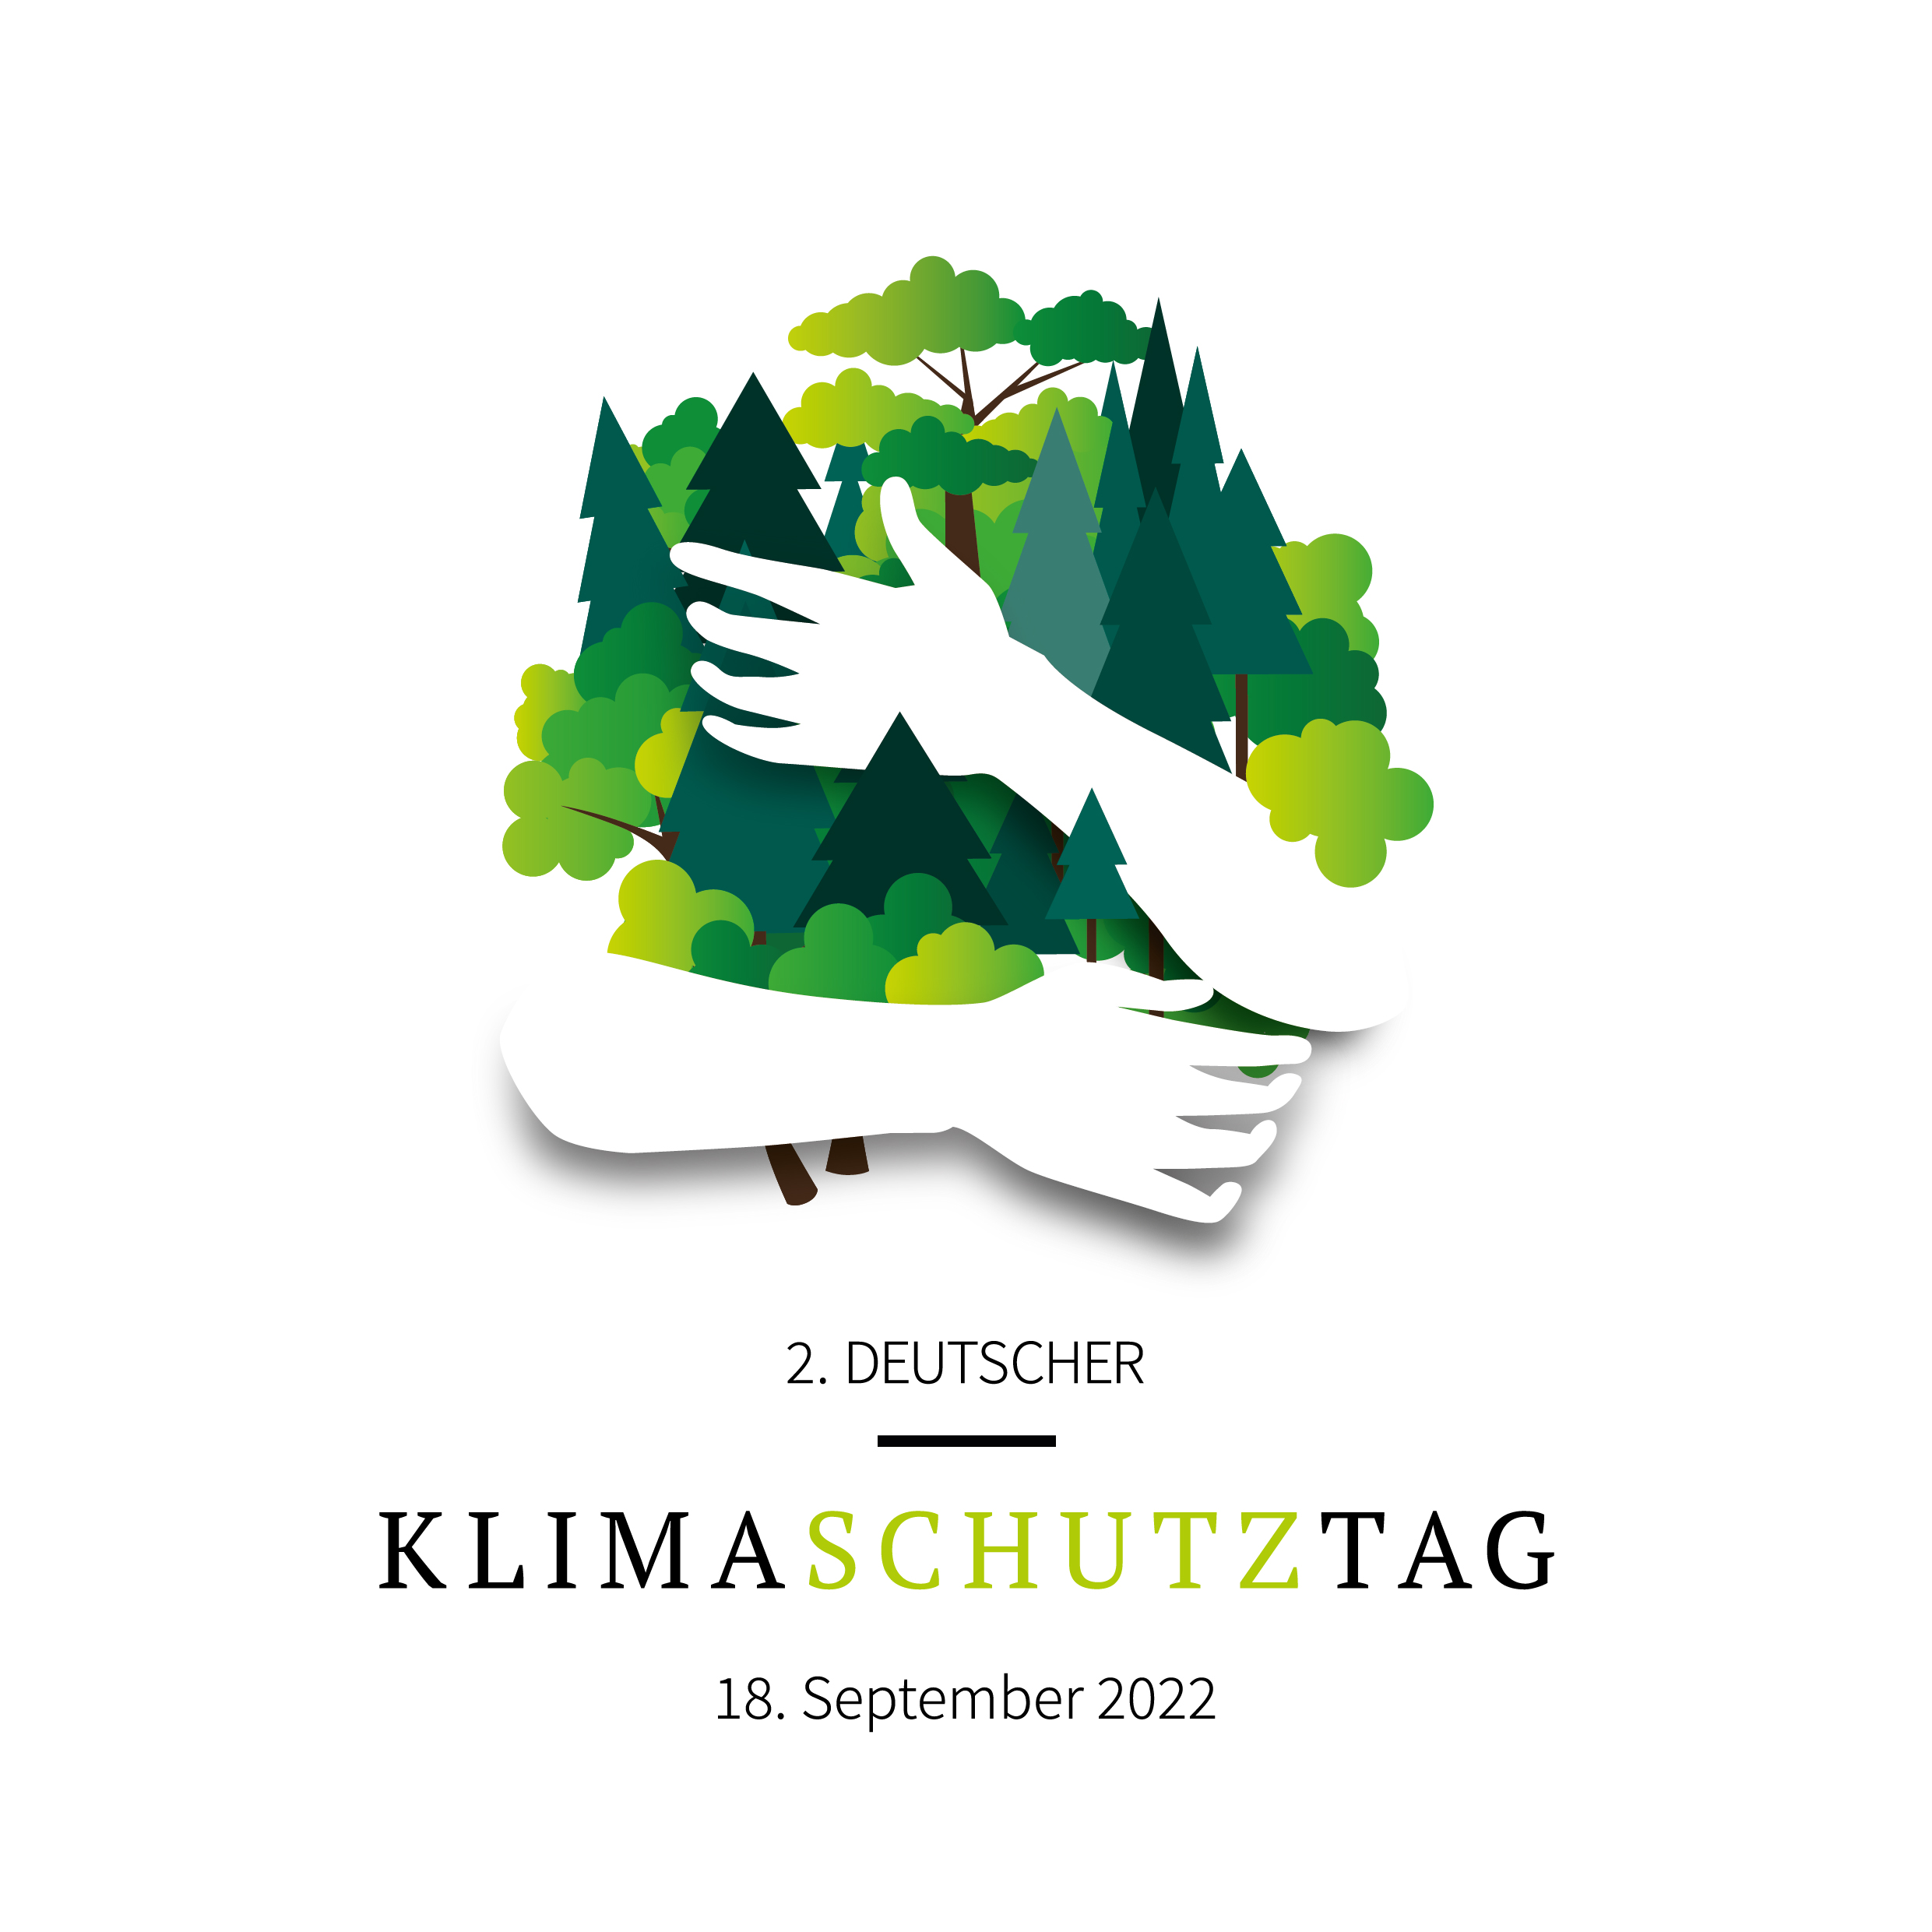 Am 18. September 2022 ist 2. Deutscher Klimaschutztag